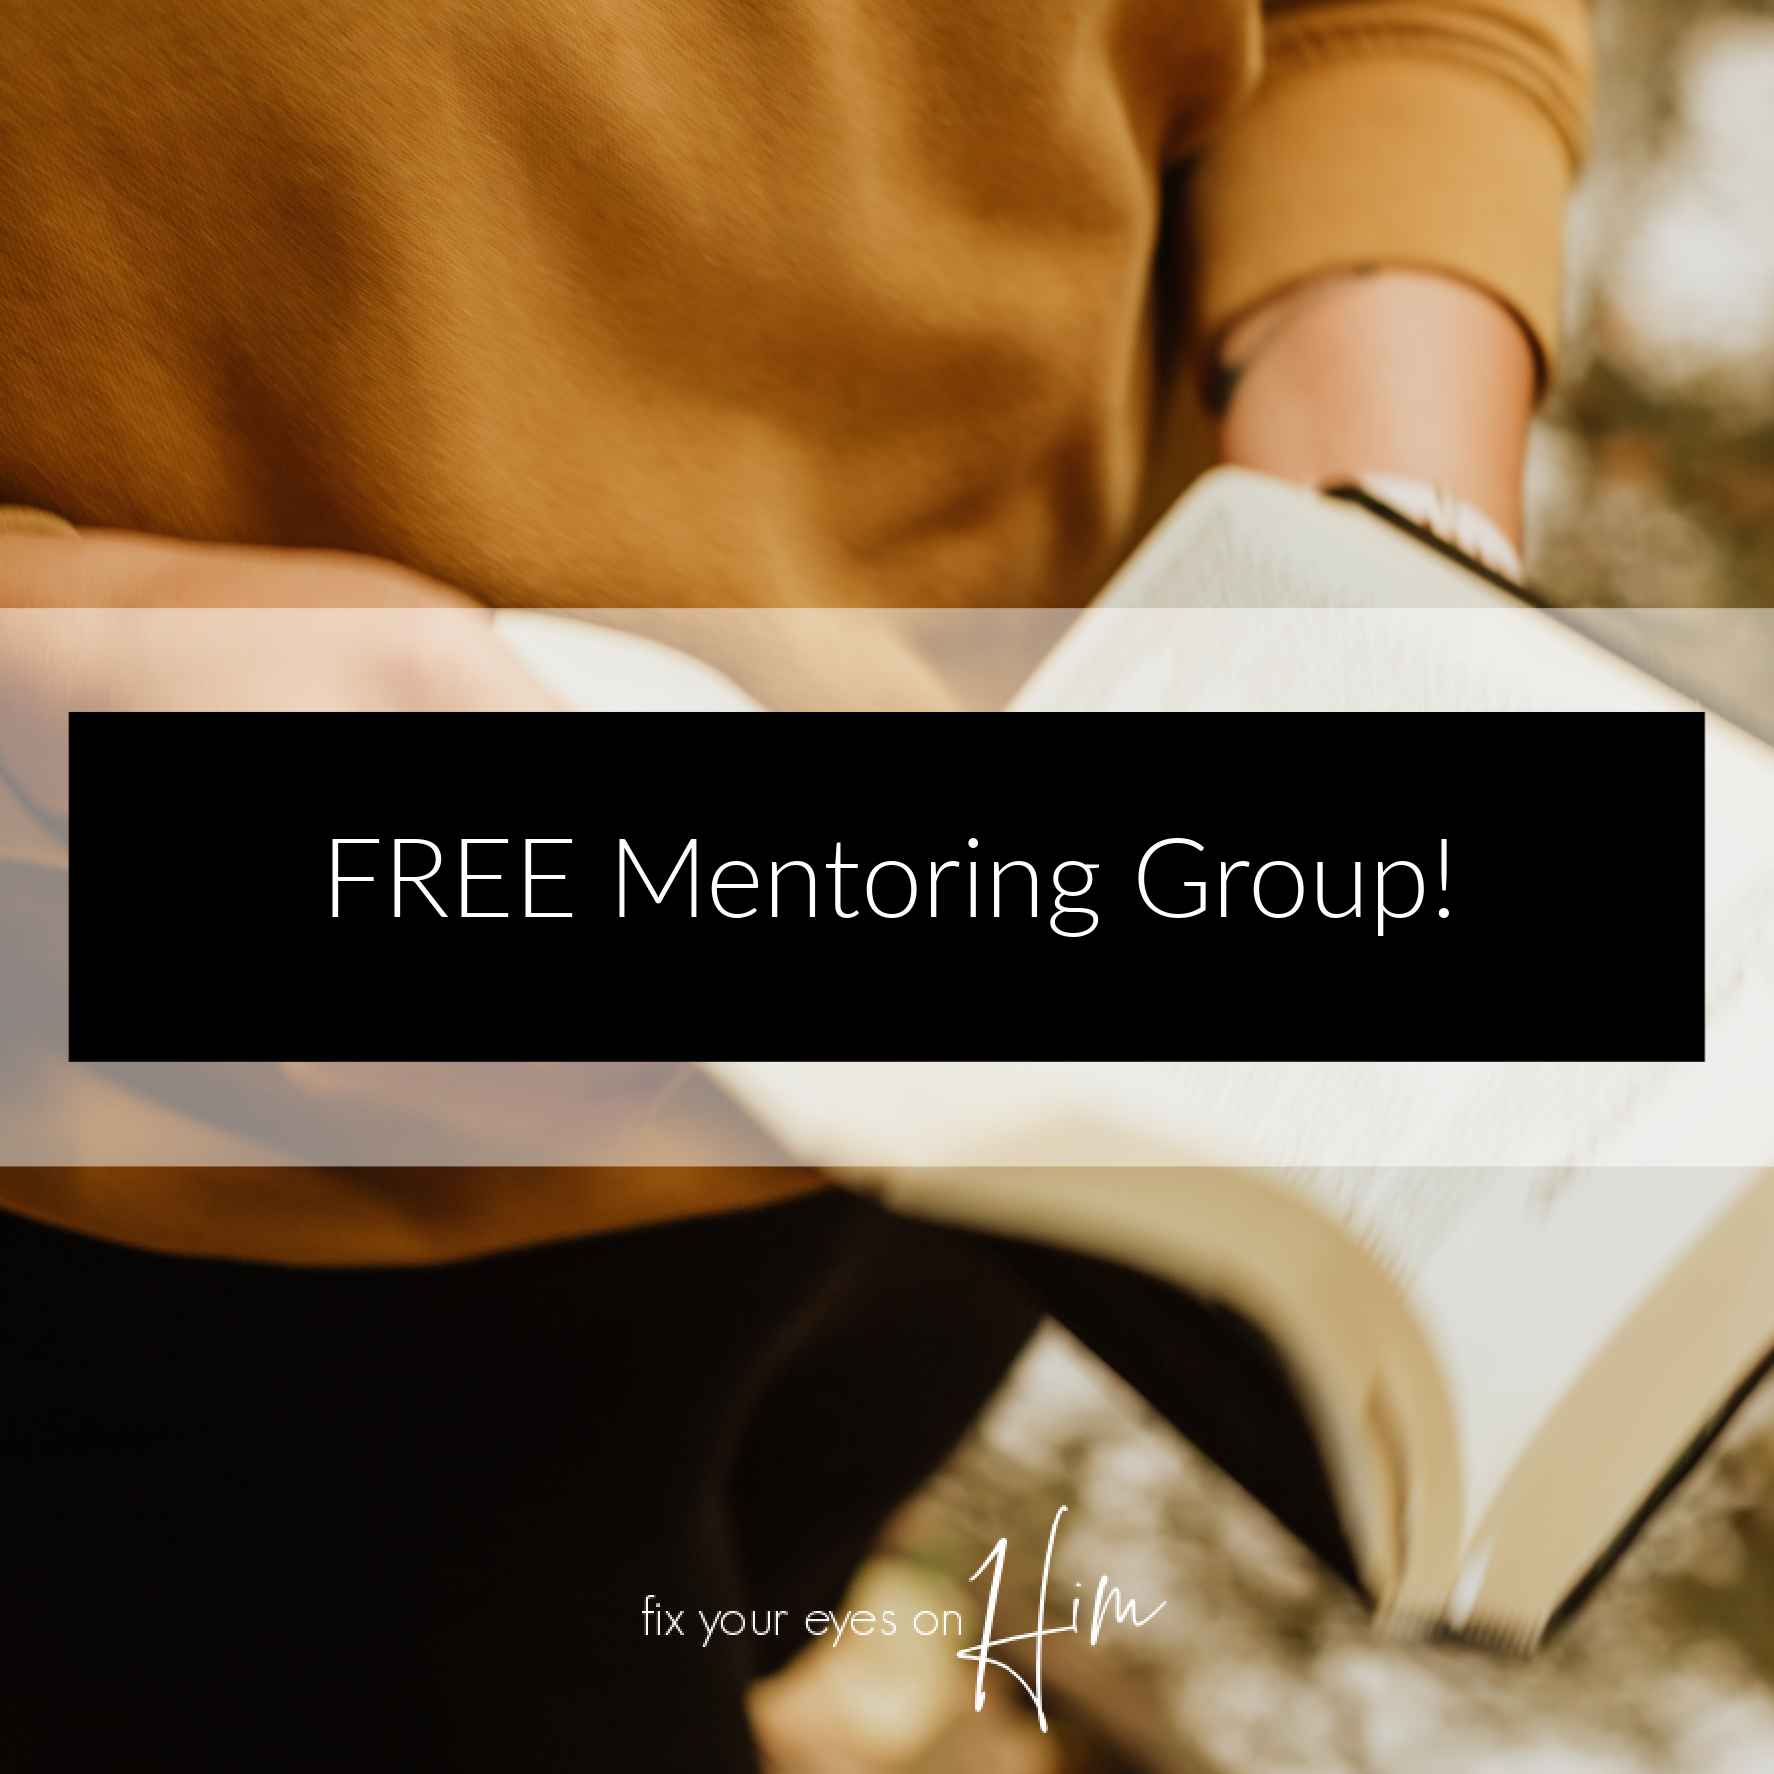 Free Mentoring Group!